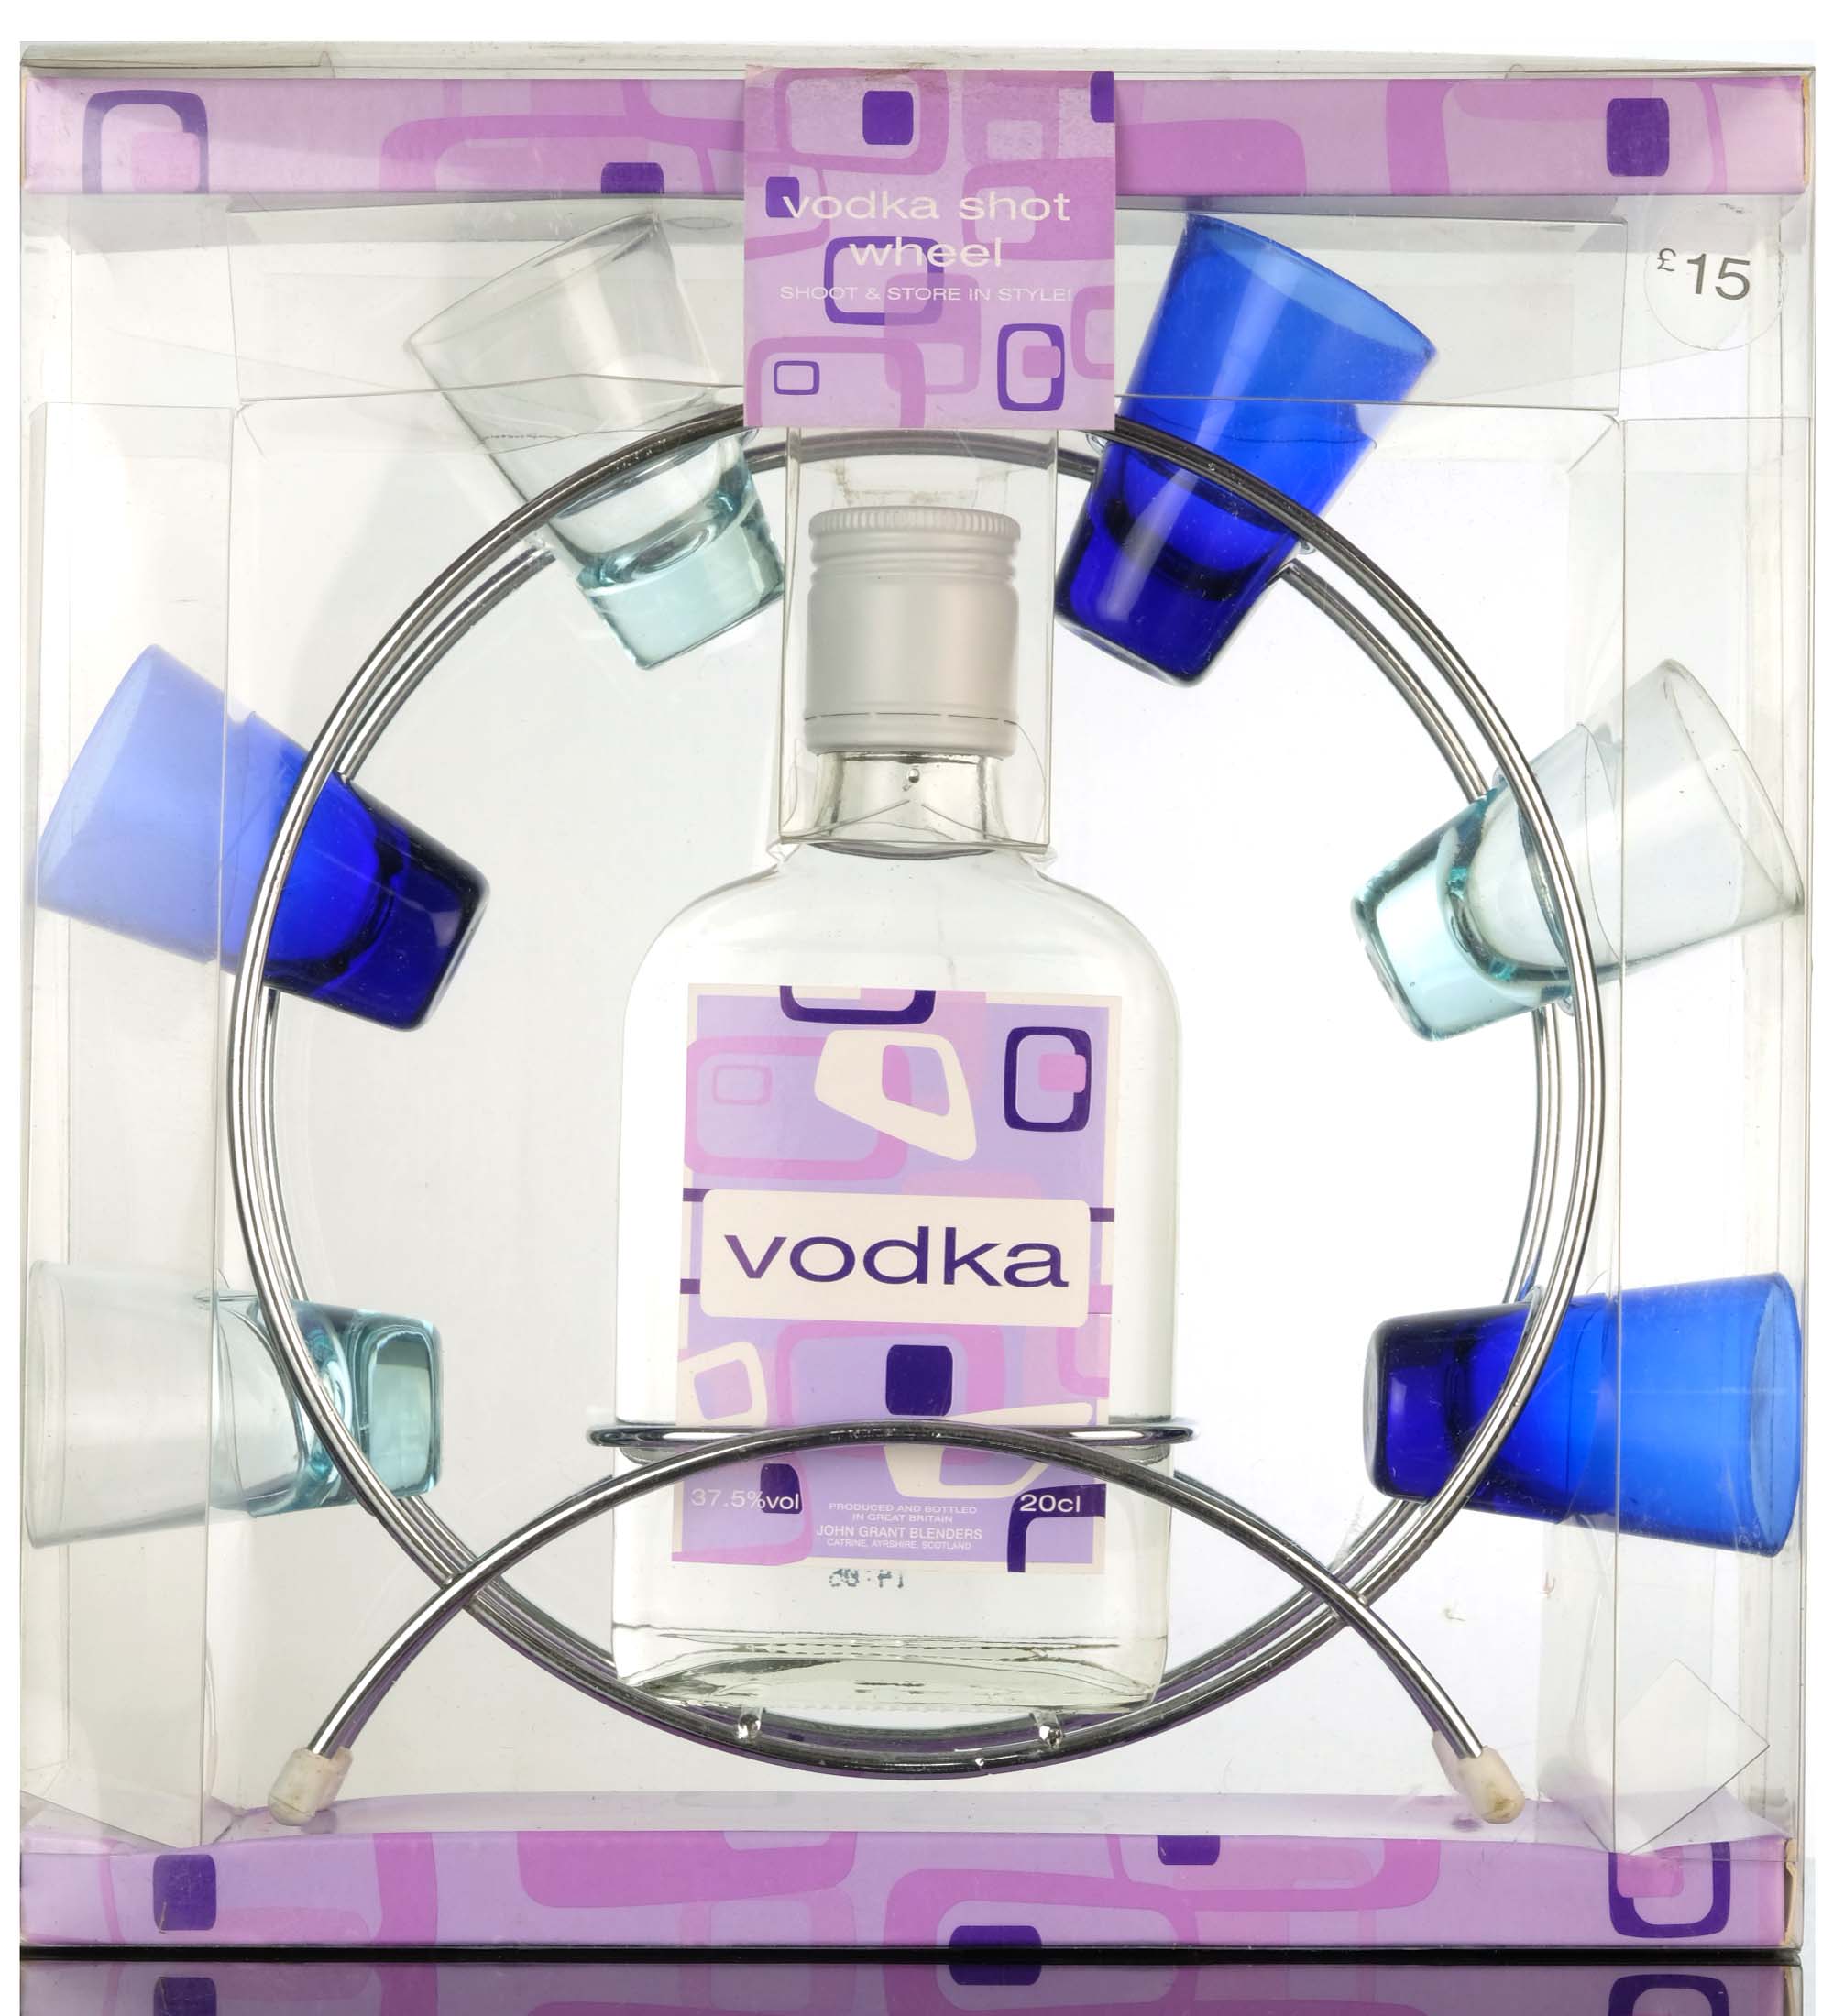 Vodka Shot Wheel Set